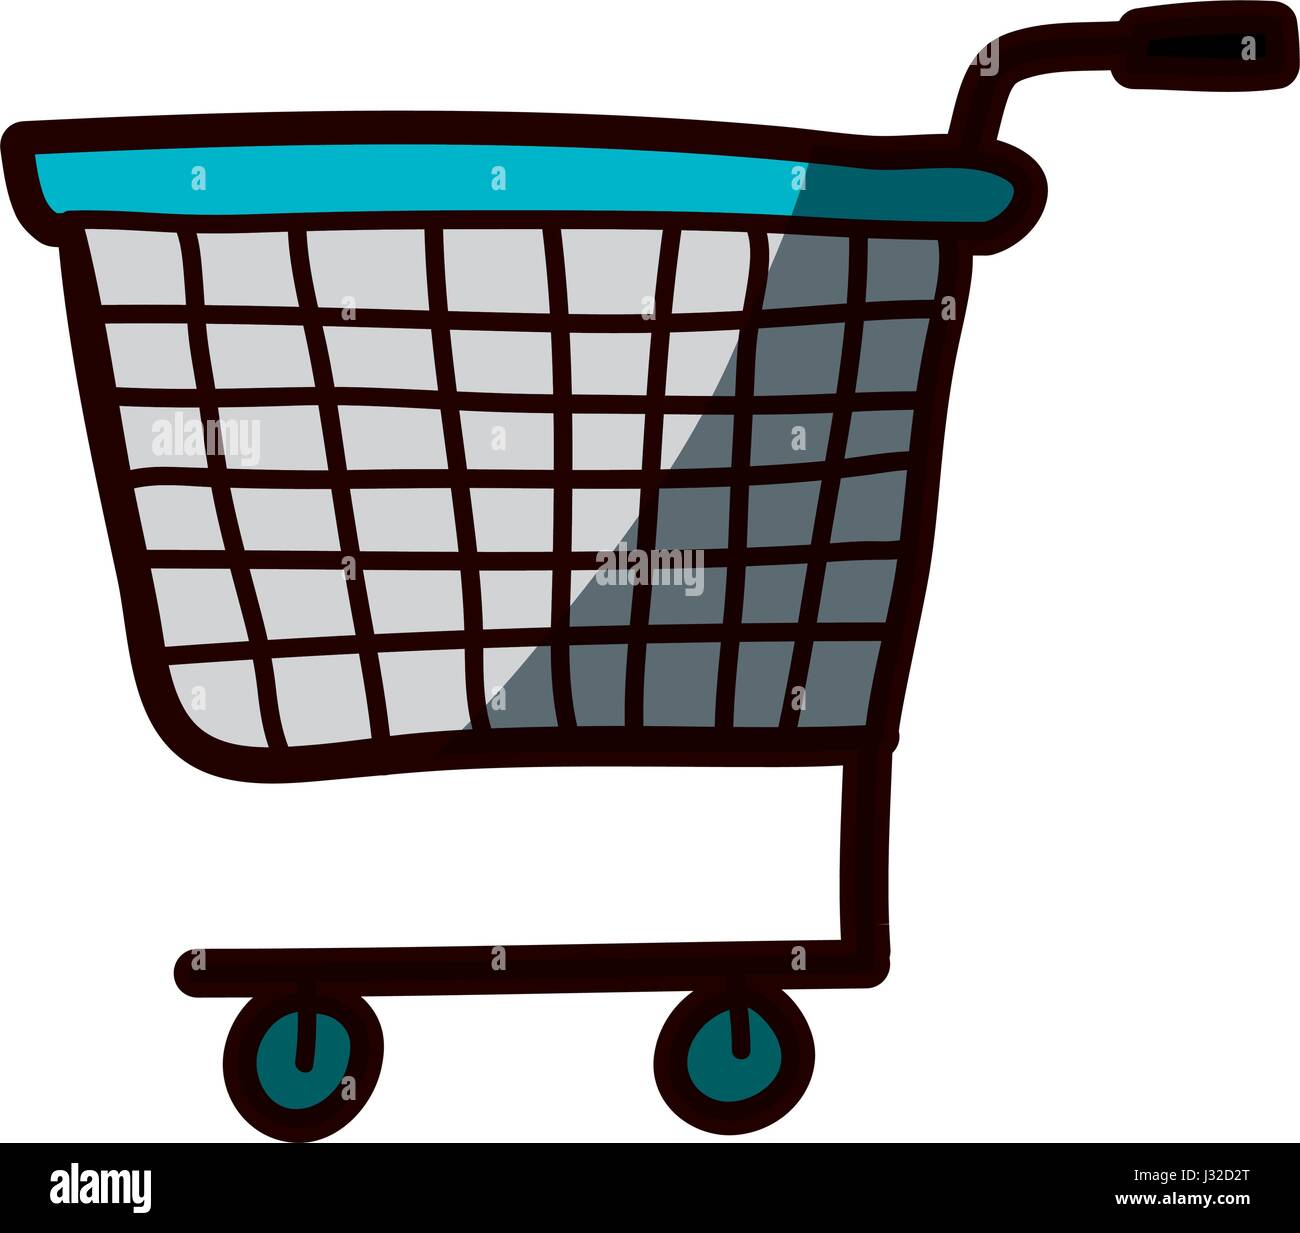 helle Hand gezeichnete Silhouette der Supermarkt Einkaufswagen mit  Halbschatten Stock-Vektorgrafik - Alamy